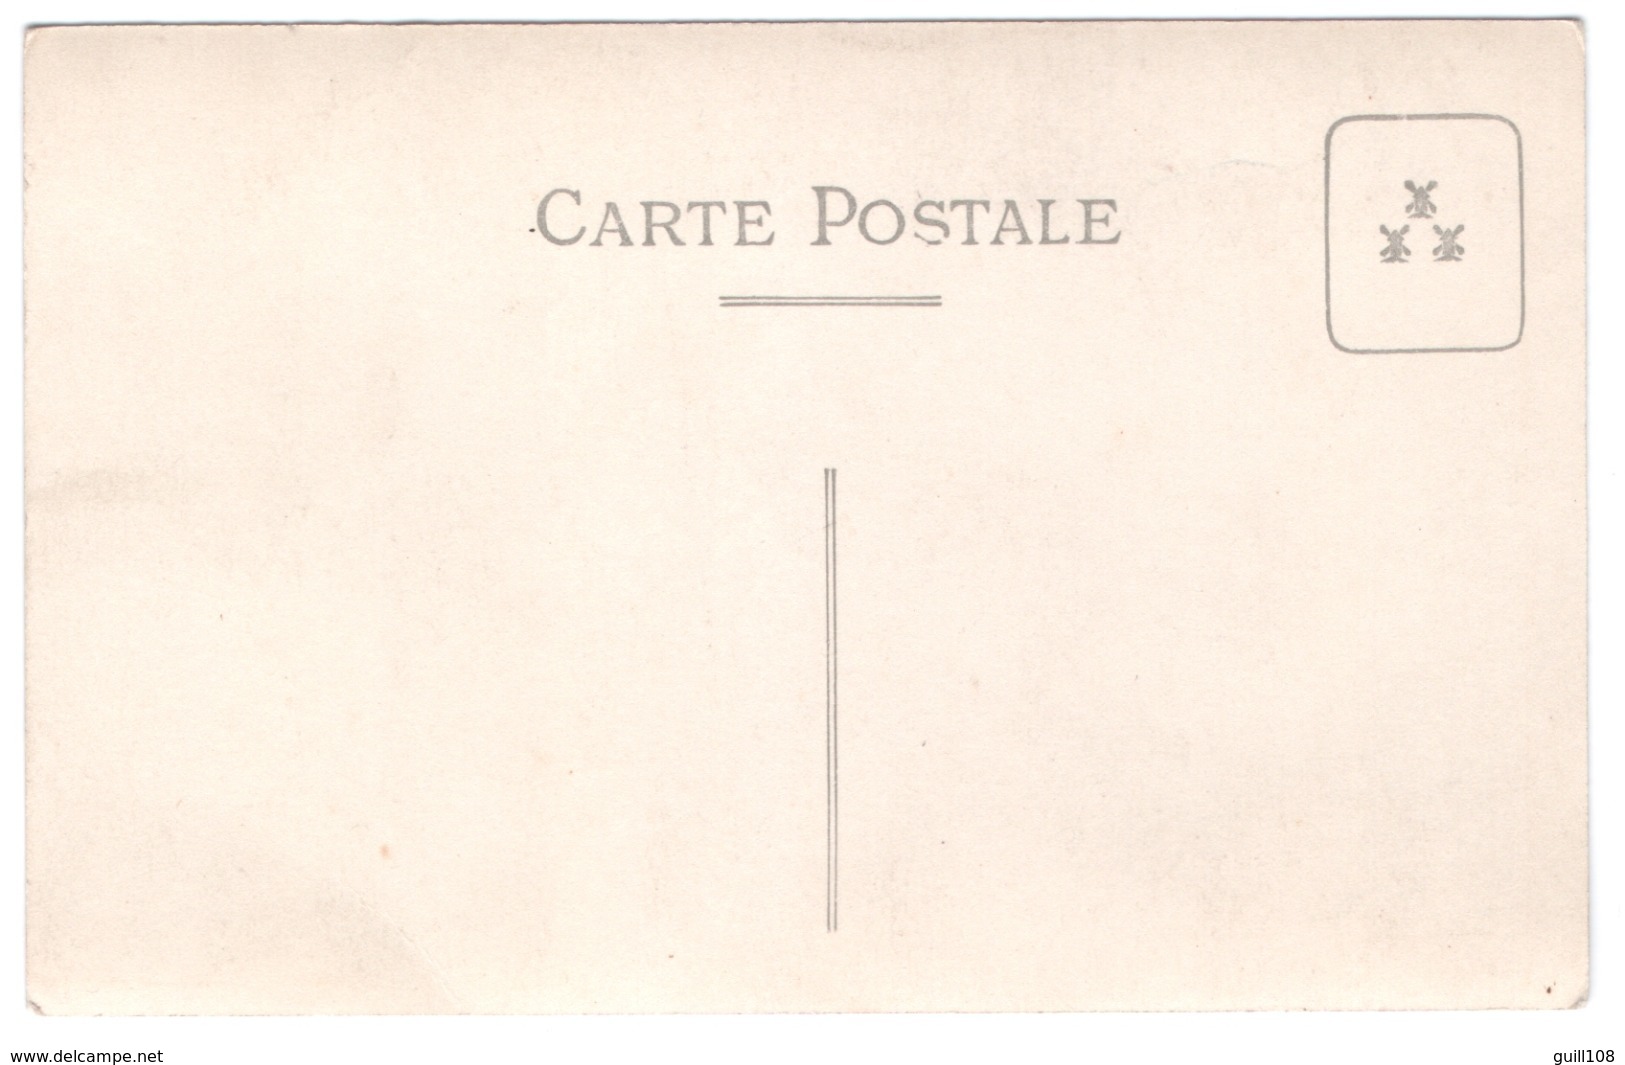 Jolie Carte Postale Photo Thème Lorraine Drapeau Repas Apéritif Champagne Commémoration Fête à Identifier 1920s A30-32 - Lorraine